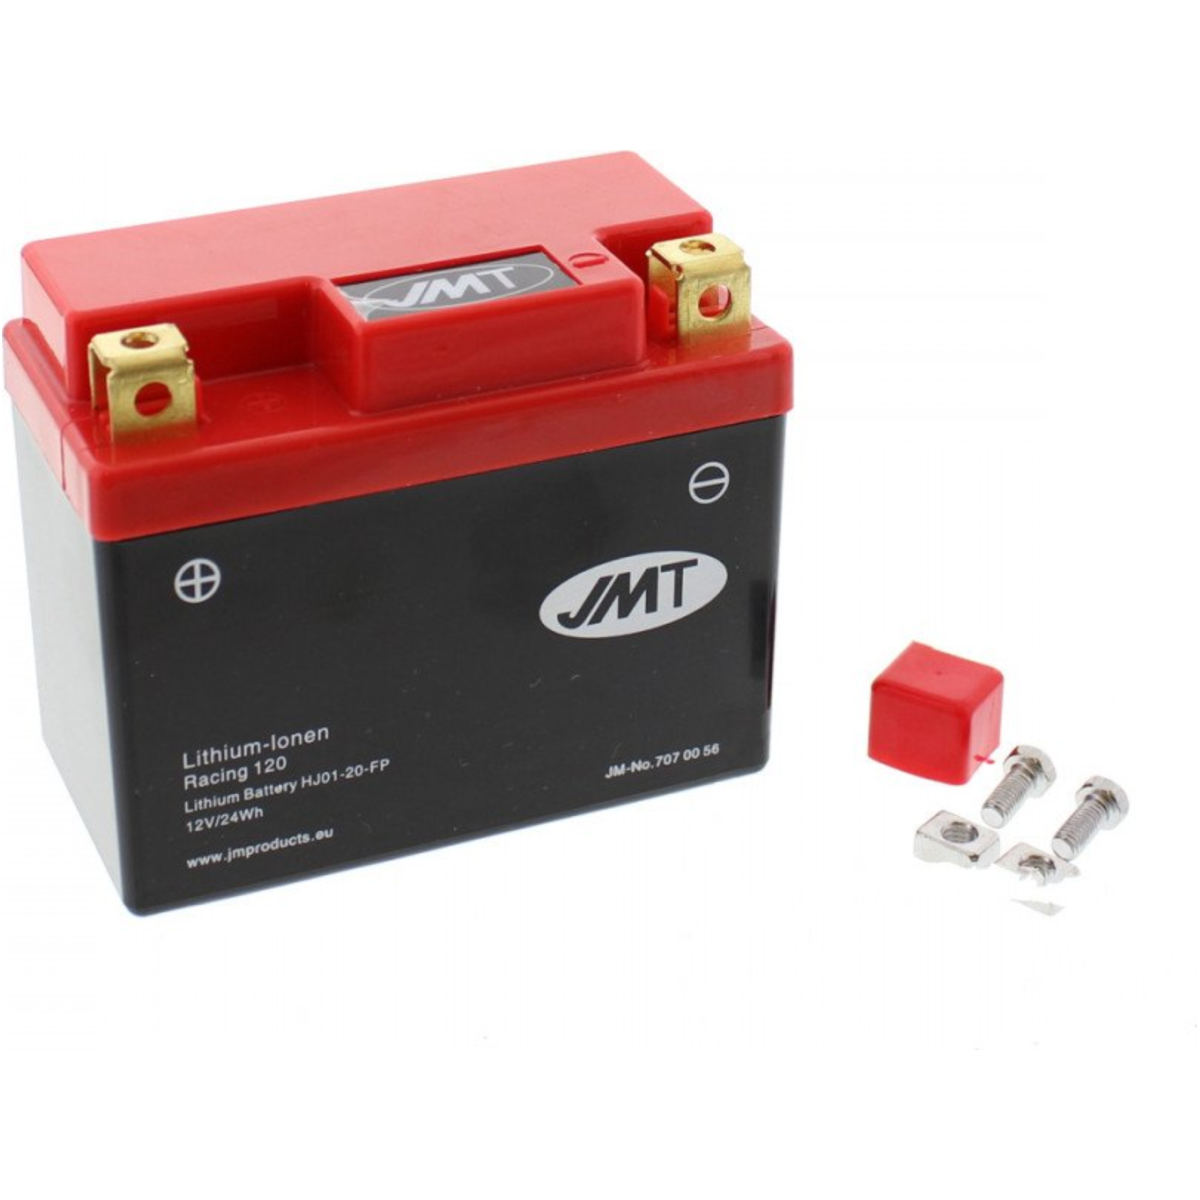 Jmt hj01-20-fp motorradbatterie von JMT